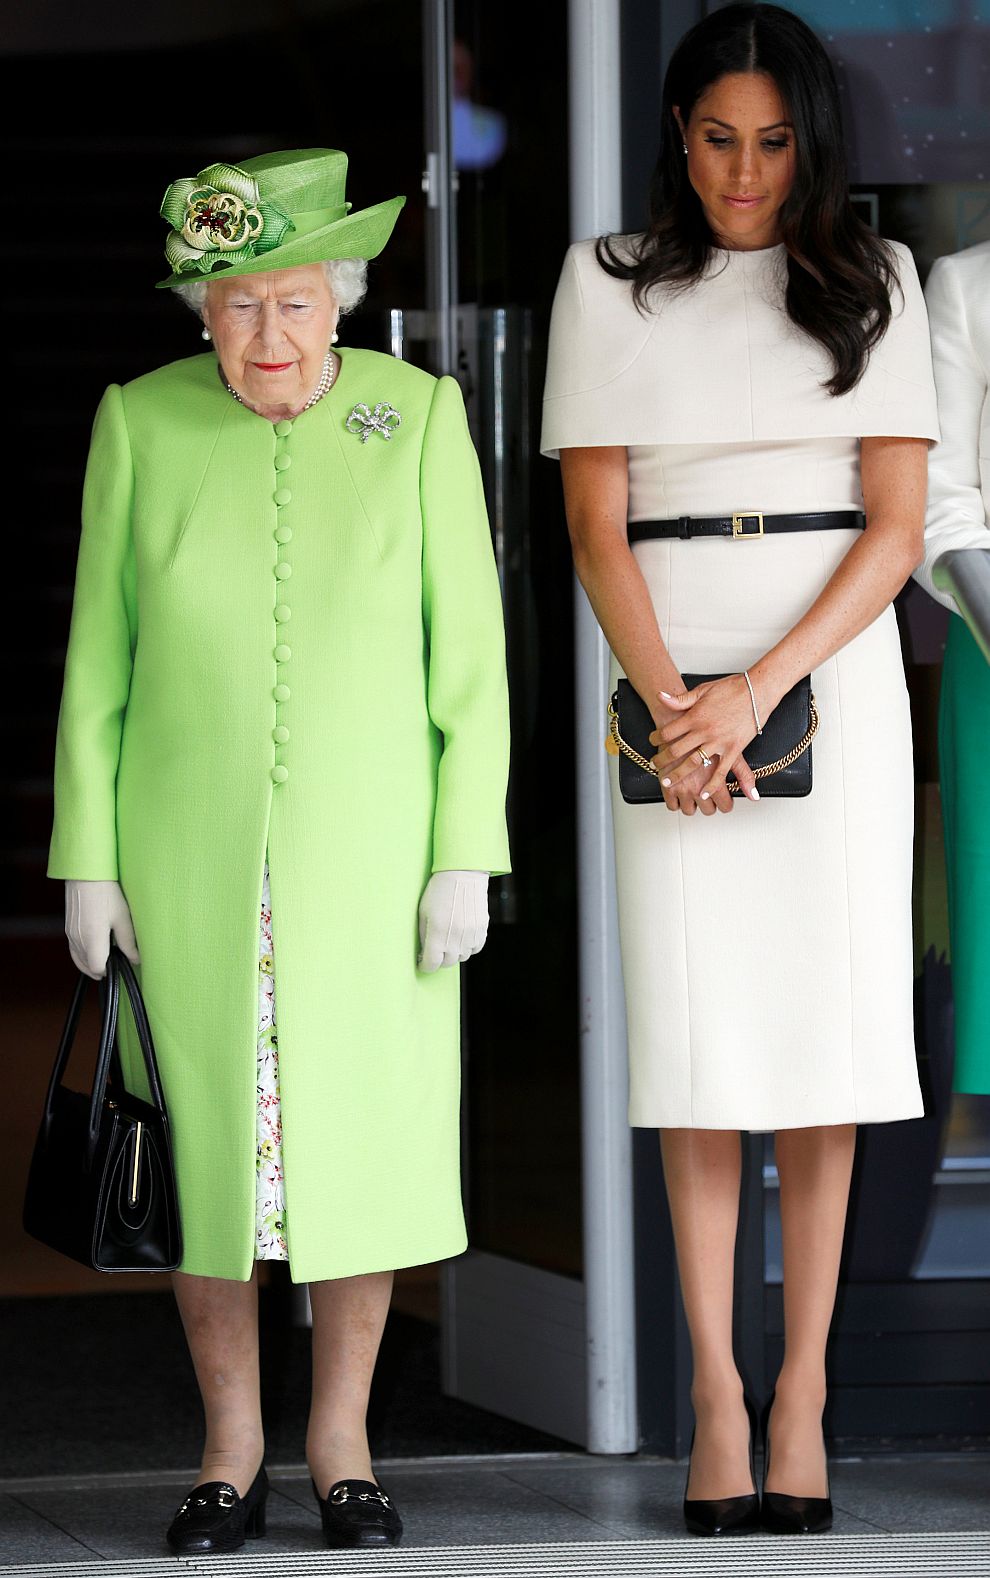 Първият официален съвместен ангажимент на Меган с кралицата бе на 14 юни тази година в графство Чешър. Херцогинята на Съсекс избра за този своеобразен свой дебют кремава рокля с пелерина, дело на дизайнерката на булчинската ѝ рокля Клеър Уейт Келър, работеща за „Живанши“.